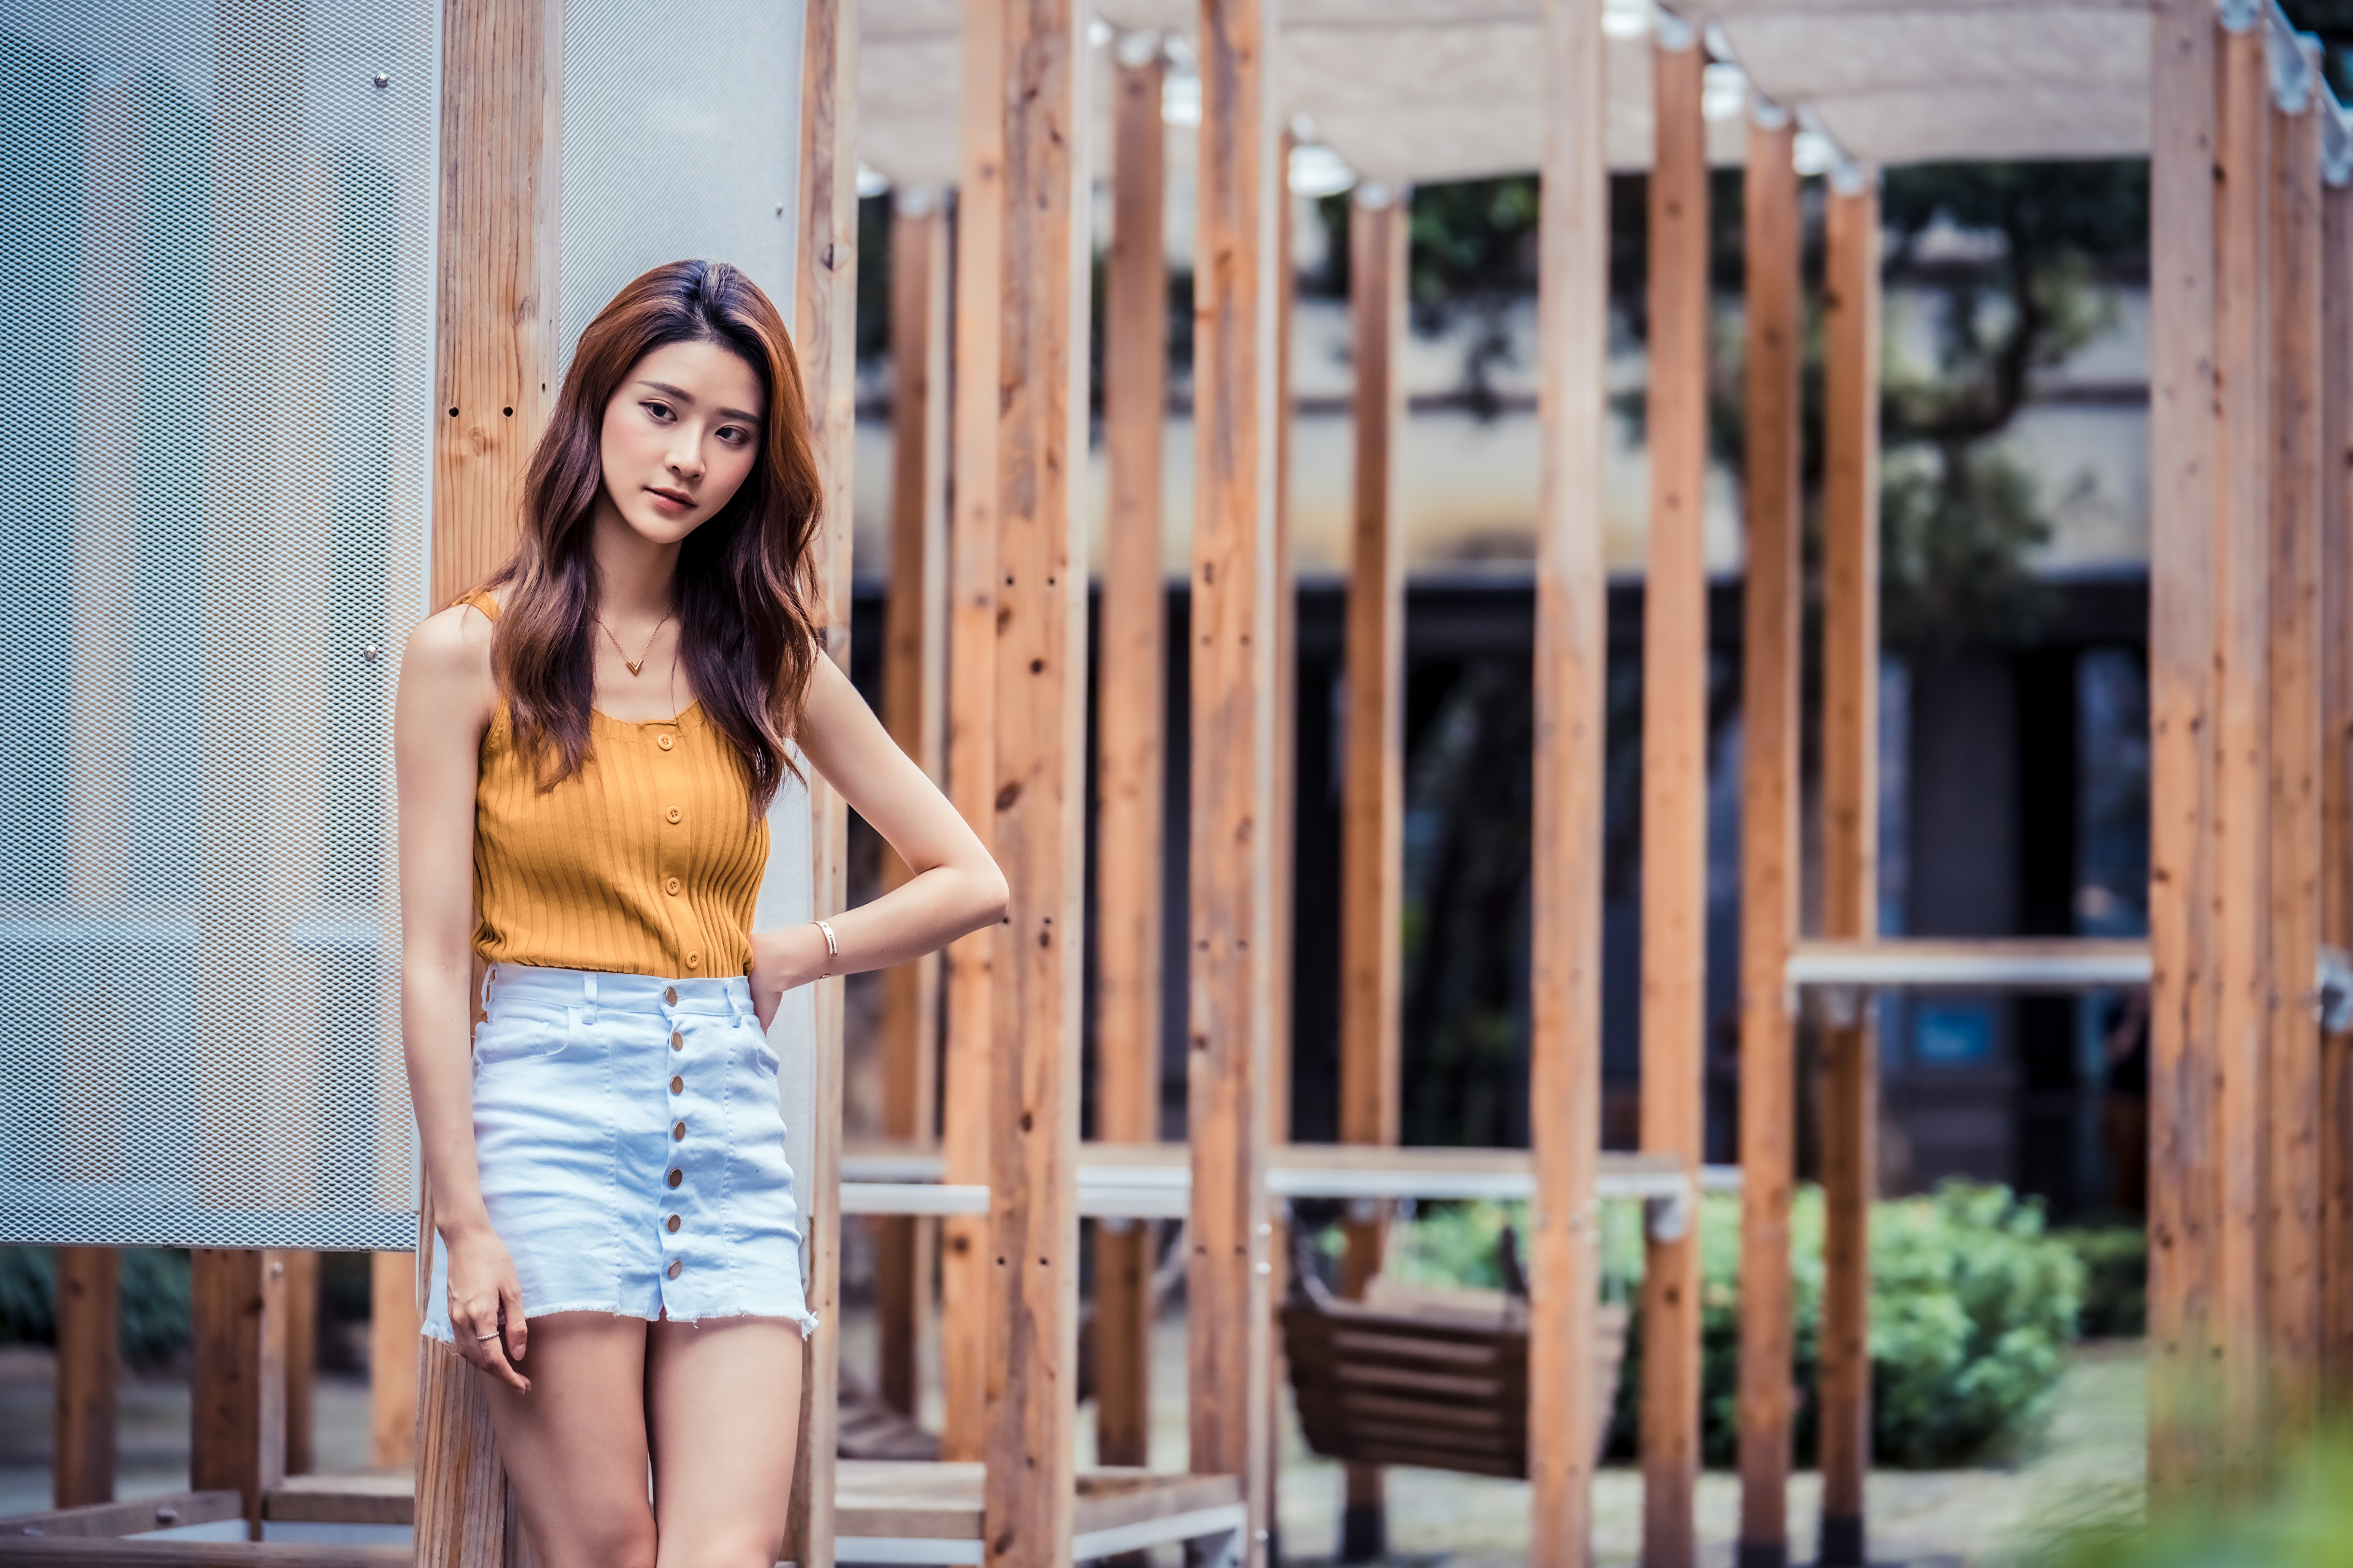 Asian Model Women Long Hair Brunette Jeans Skirt Yellow Shirt Depth Of Field Plants Leaning Bracelet 3840x2559